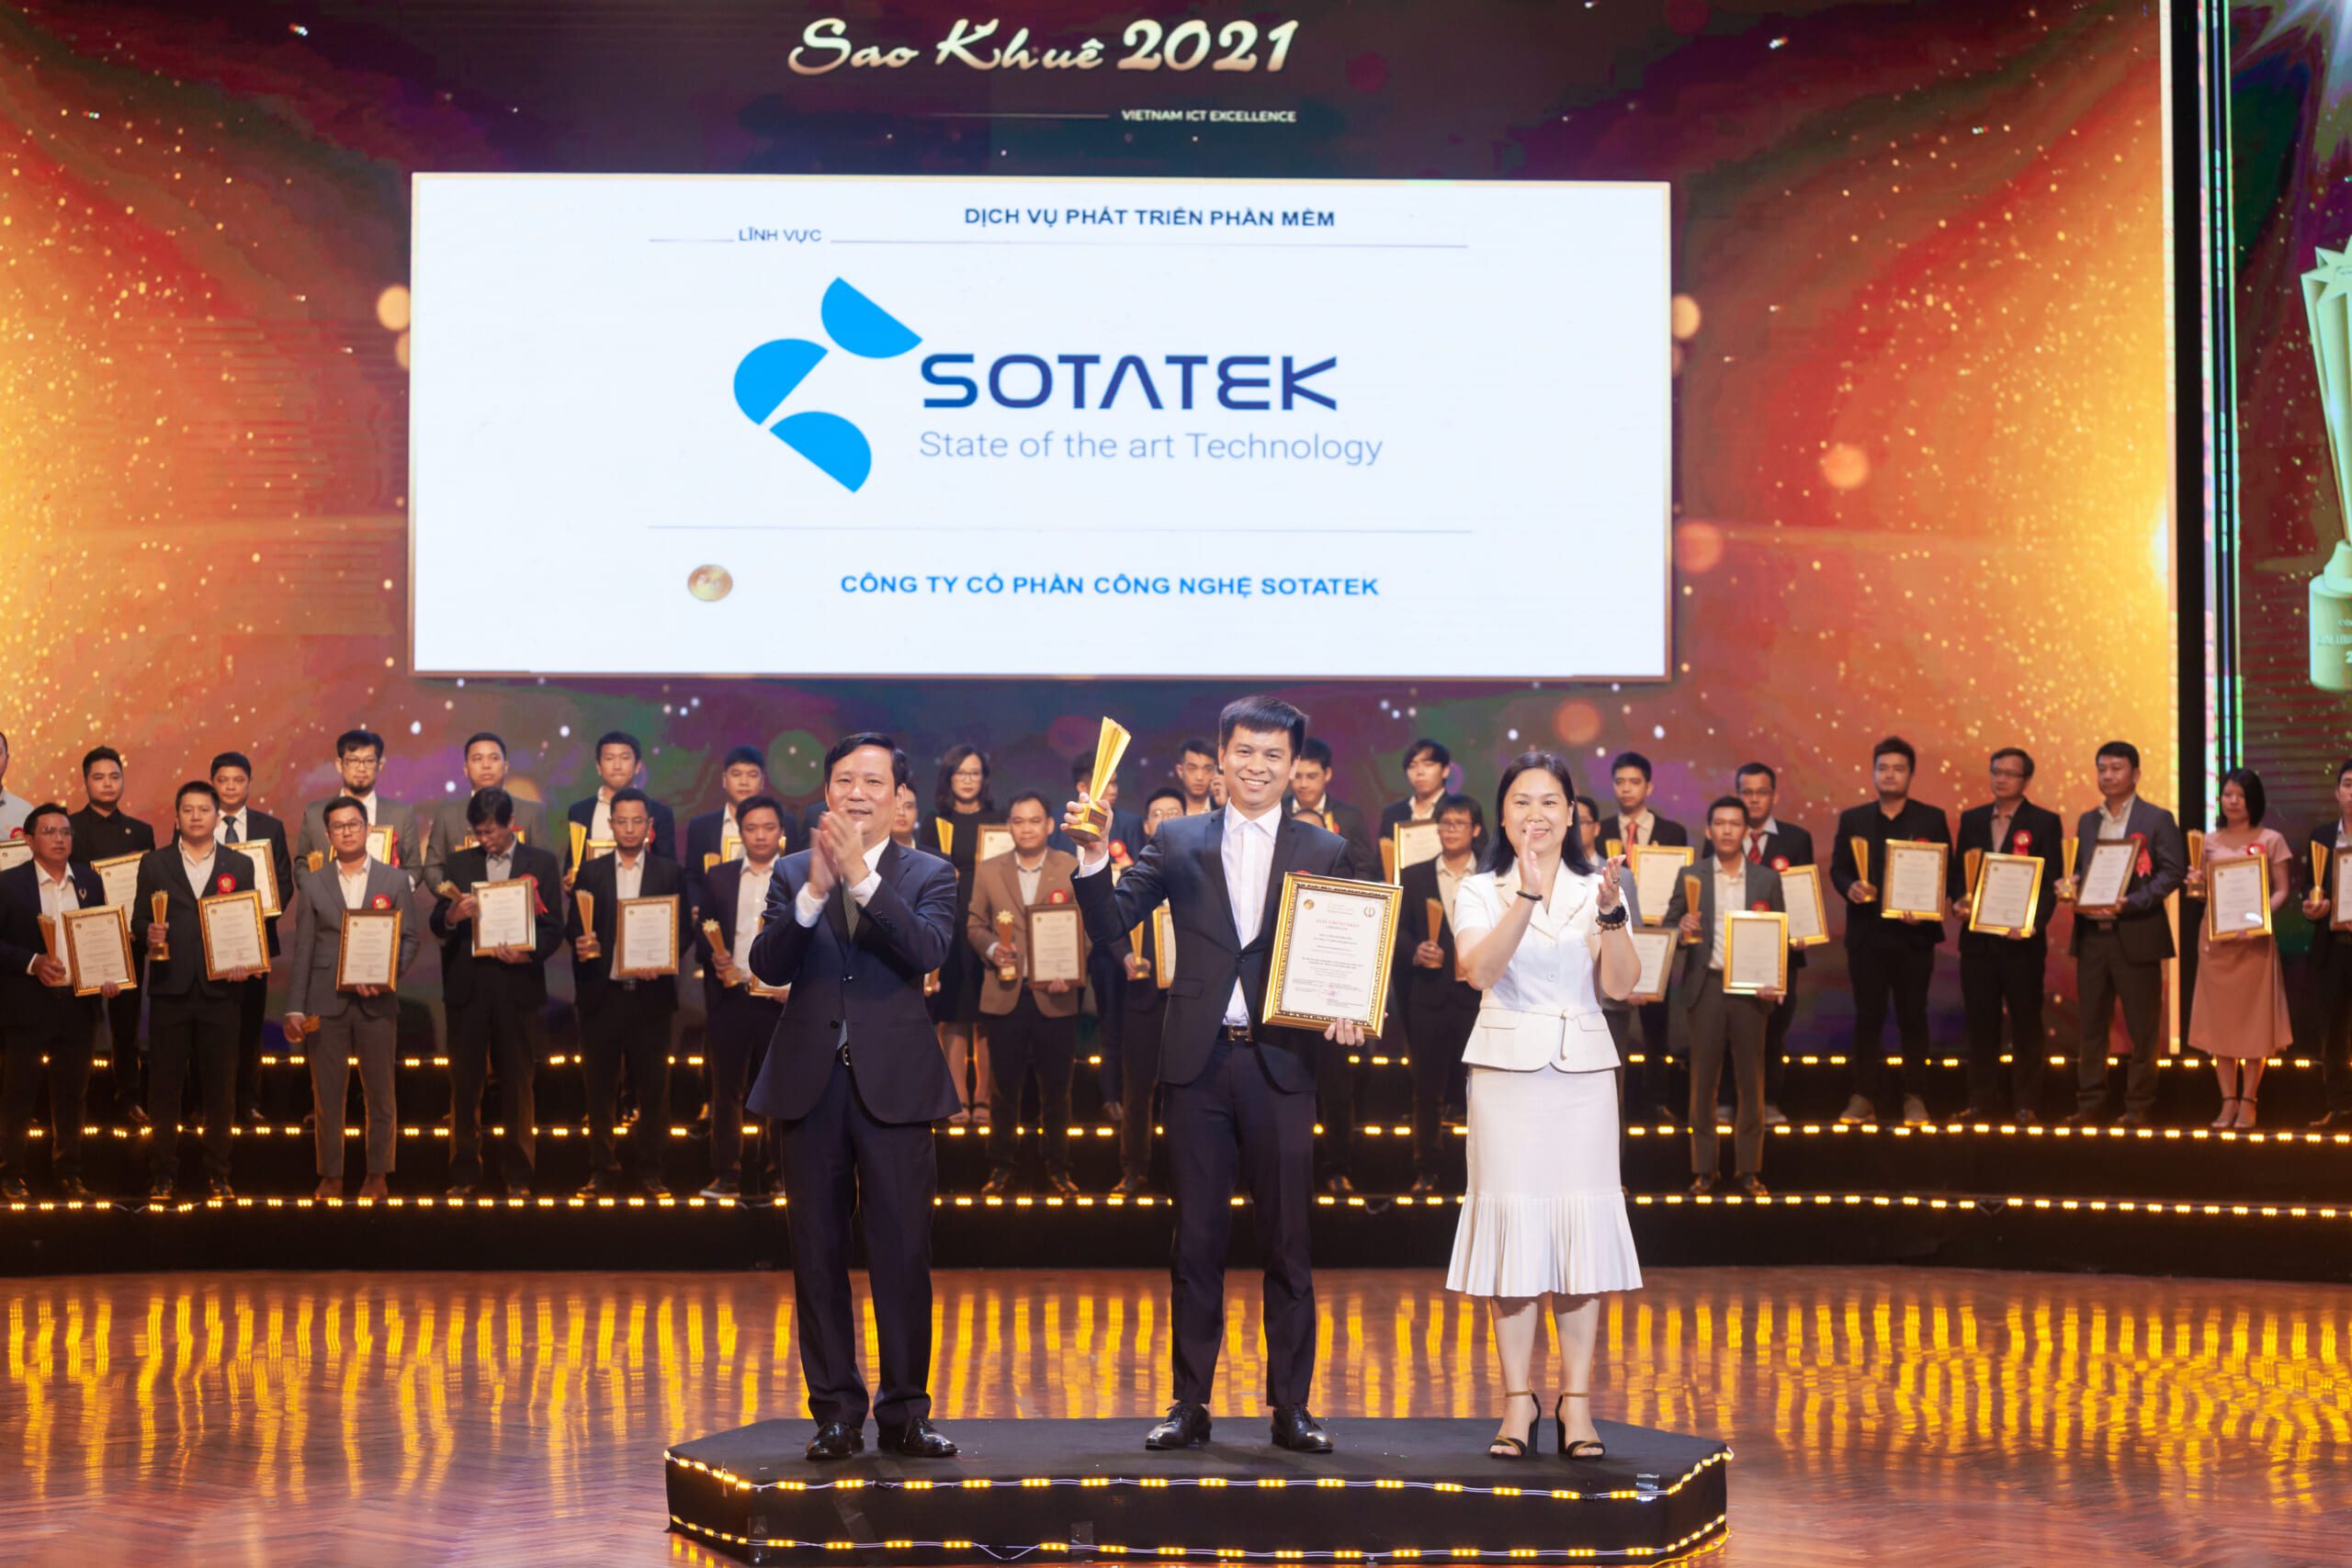 SotaTek - Sao Khue Award 2